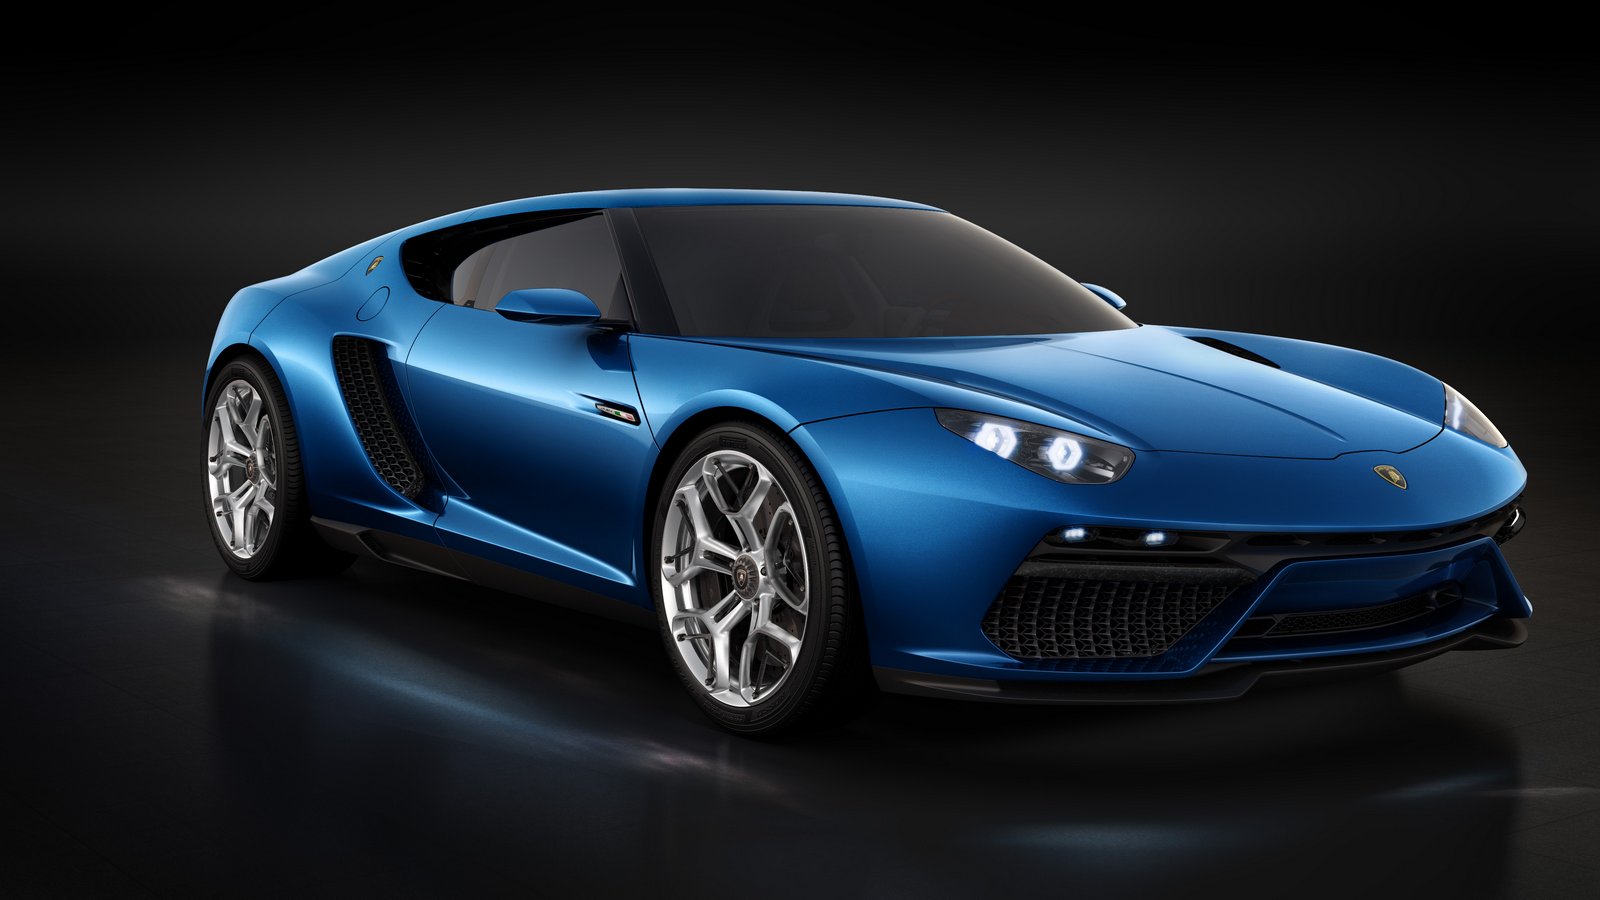 Lamborghini nhá hàng 4 siêu xe mới: Huracan và Aventador dễ bị thay thế - Ảnh 2.